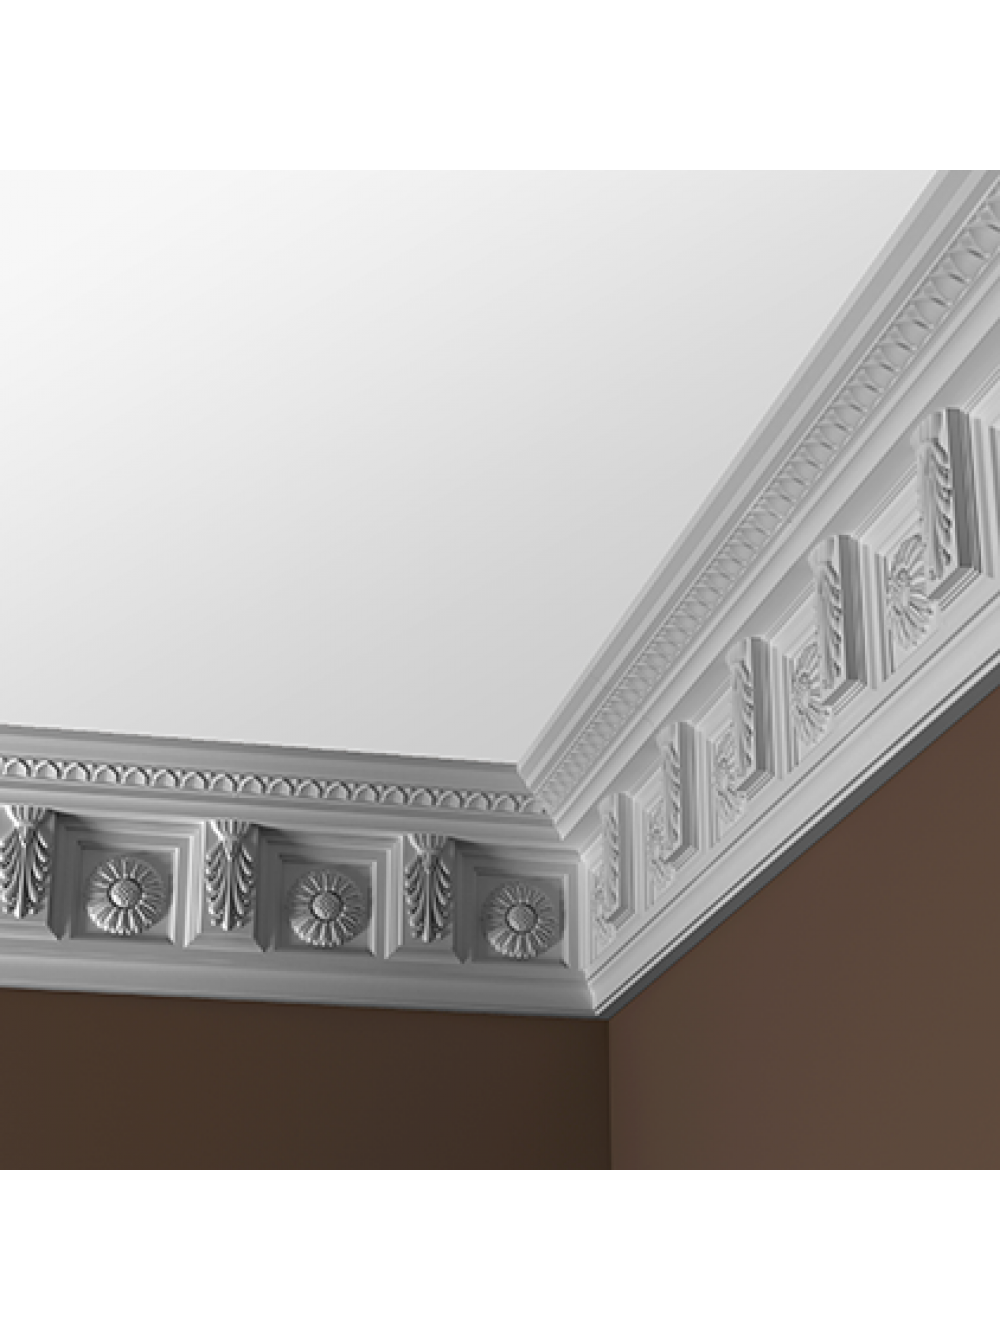 Карниз гипсовый: виды, монтаж на потолок и применение в дизайне помещения